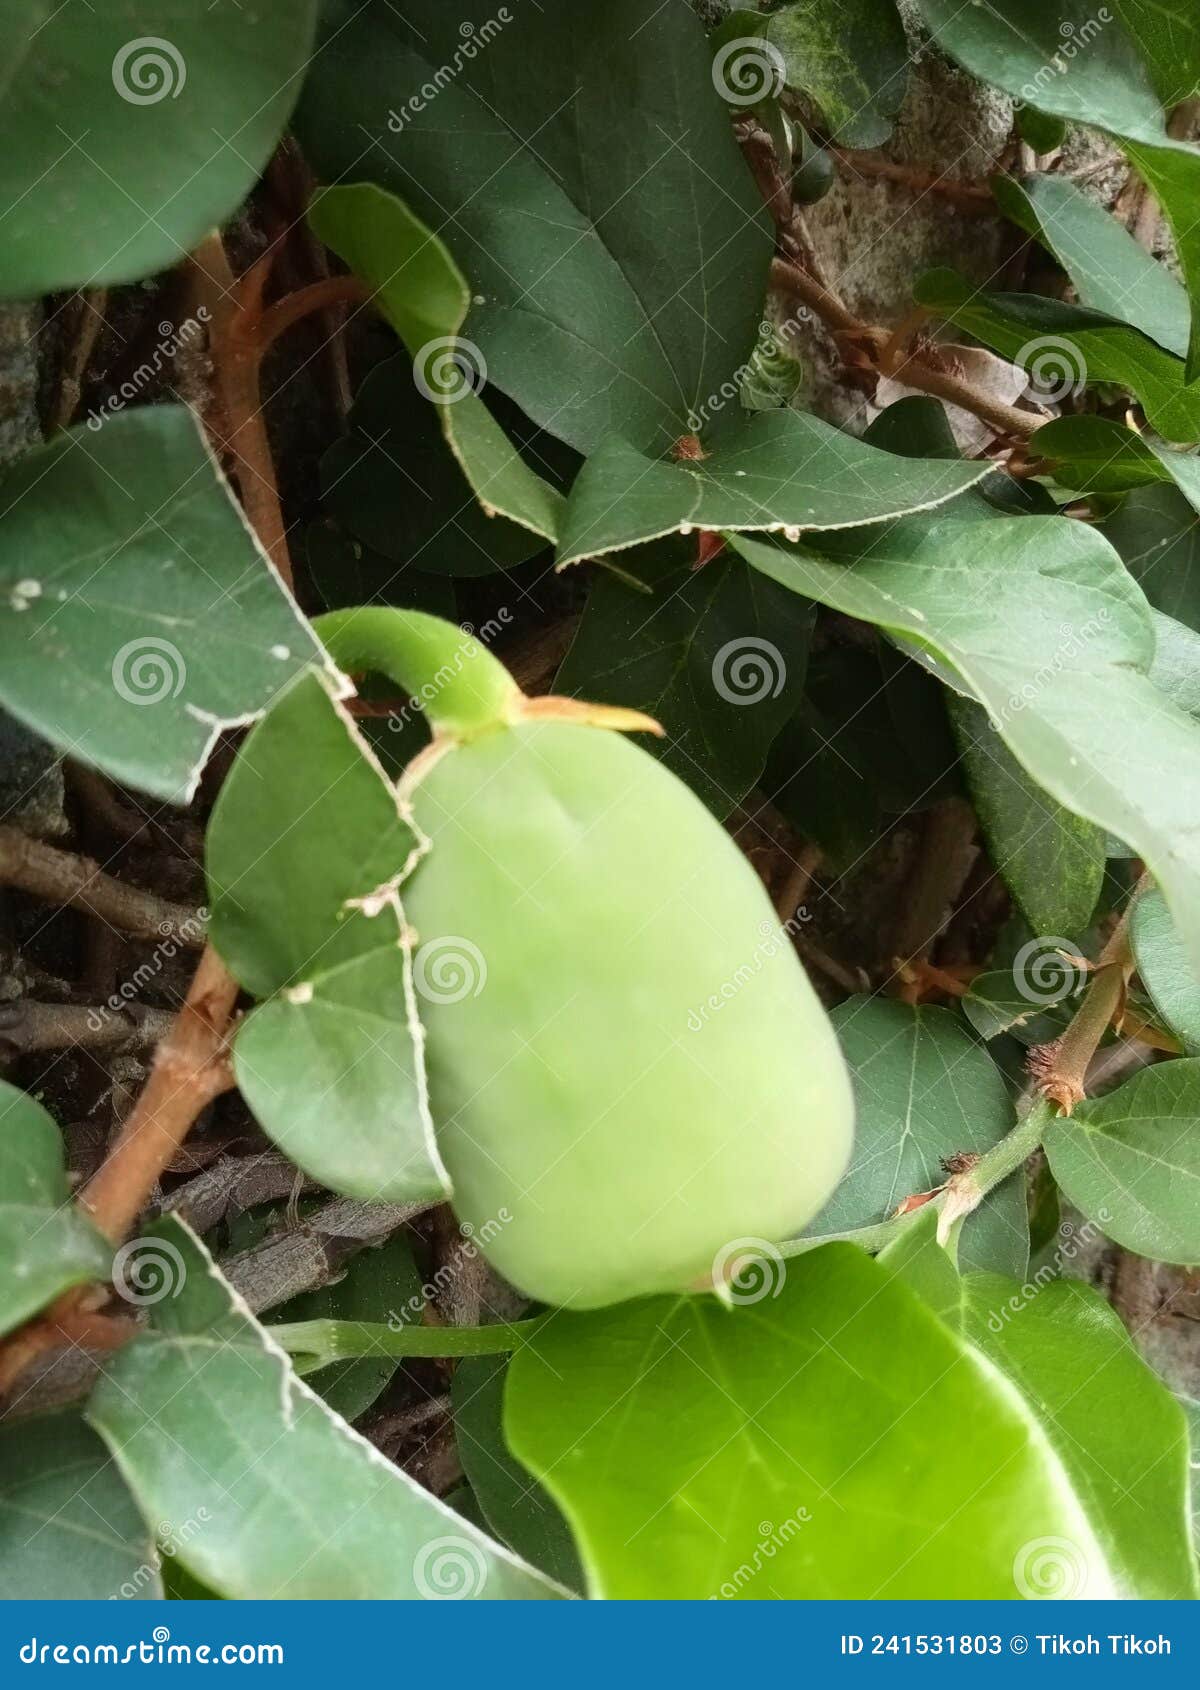 榕属religiosa或Peepal水果树 库存照片. 图片 包括有 考虑, 知道, 果子, 印第安语, 宗教 - 56255224